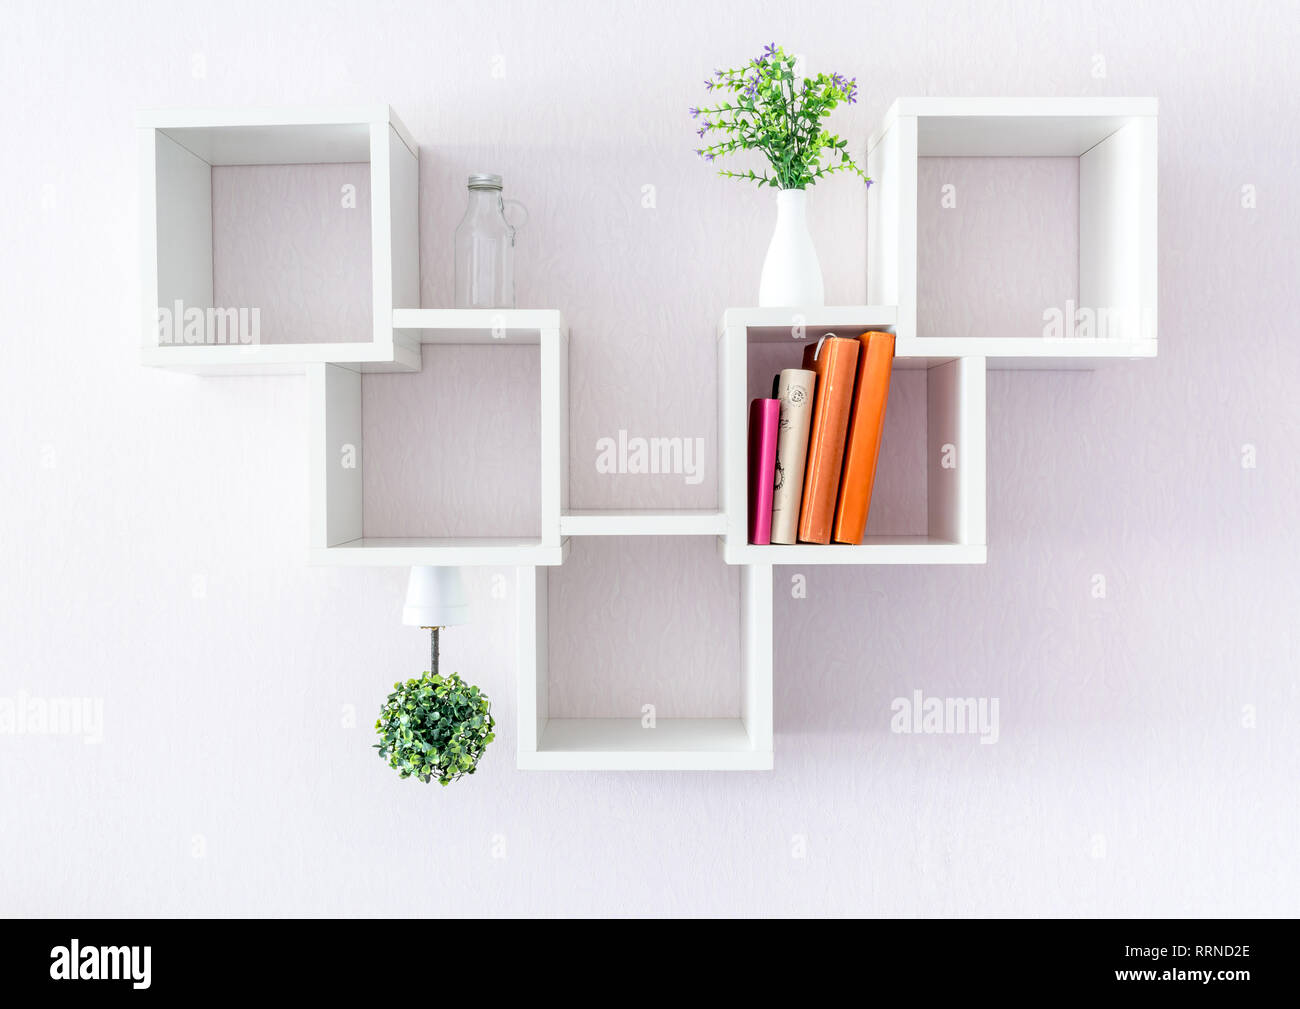 https://c8.alamy.com/compes/rrnd2e/una-moderna-estanteria-blanca-sobre-una-pared-blanca-con-un-par-de-libros-y-flores-el-minimalismo-estilo-rrnd2e.jpg